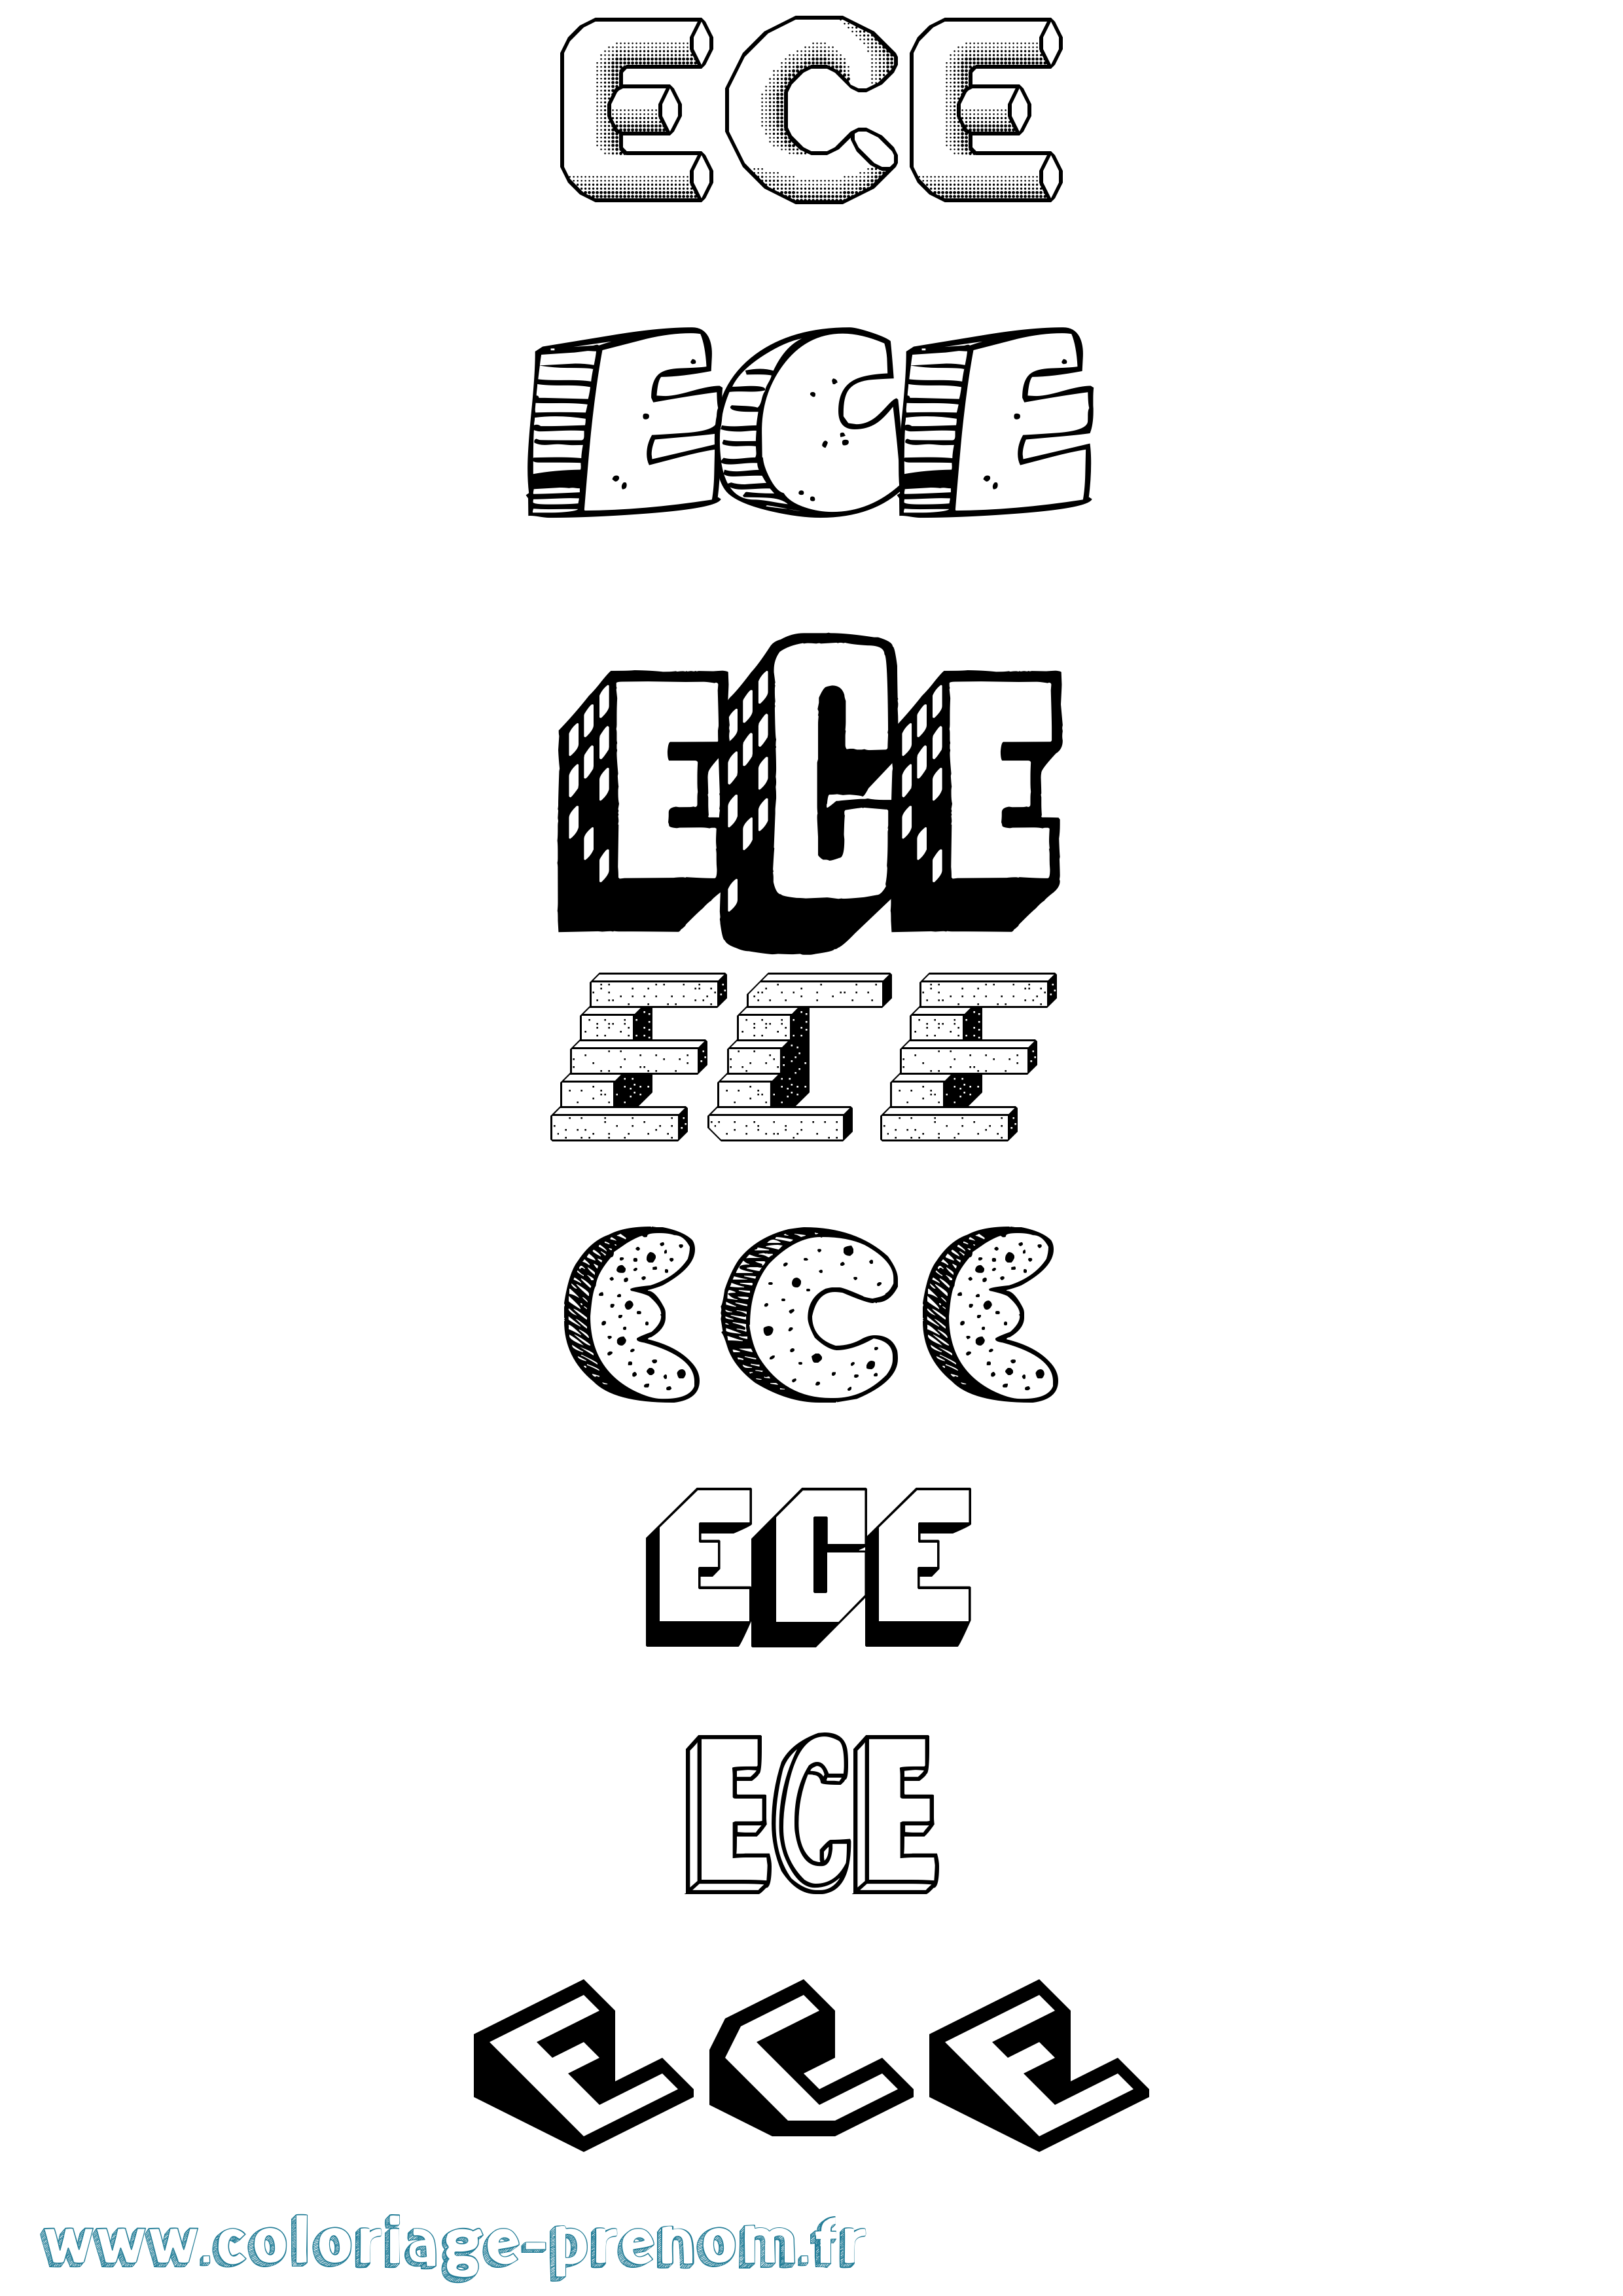 Coloriage prénom Ece Effet 3D